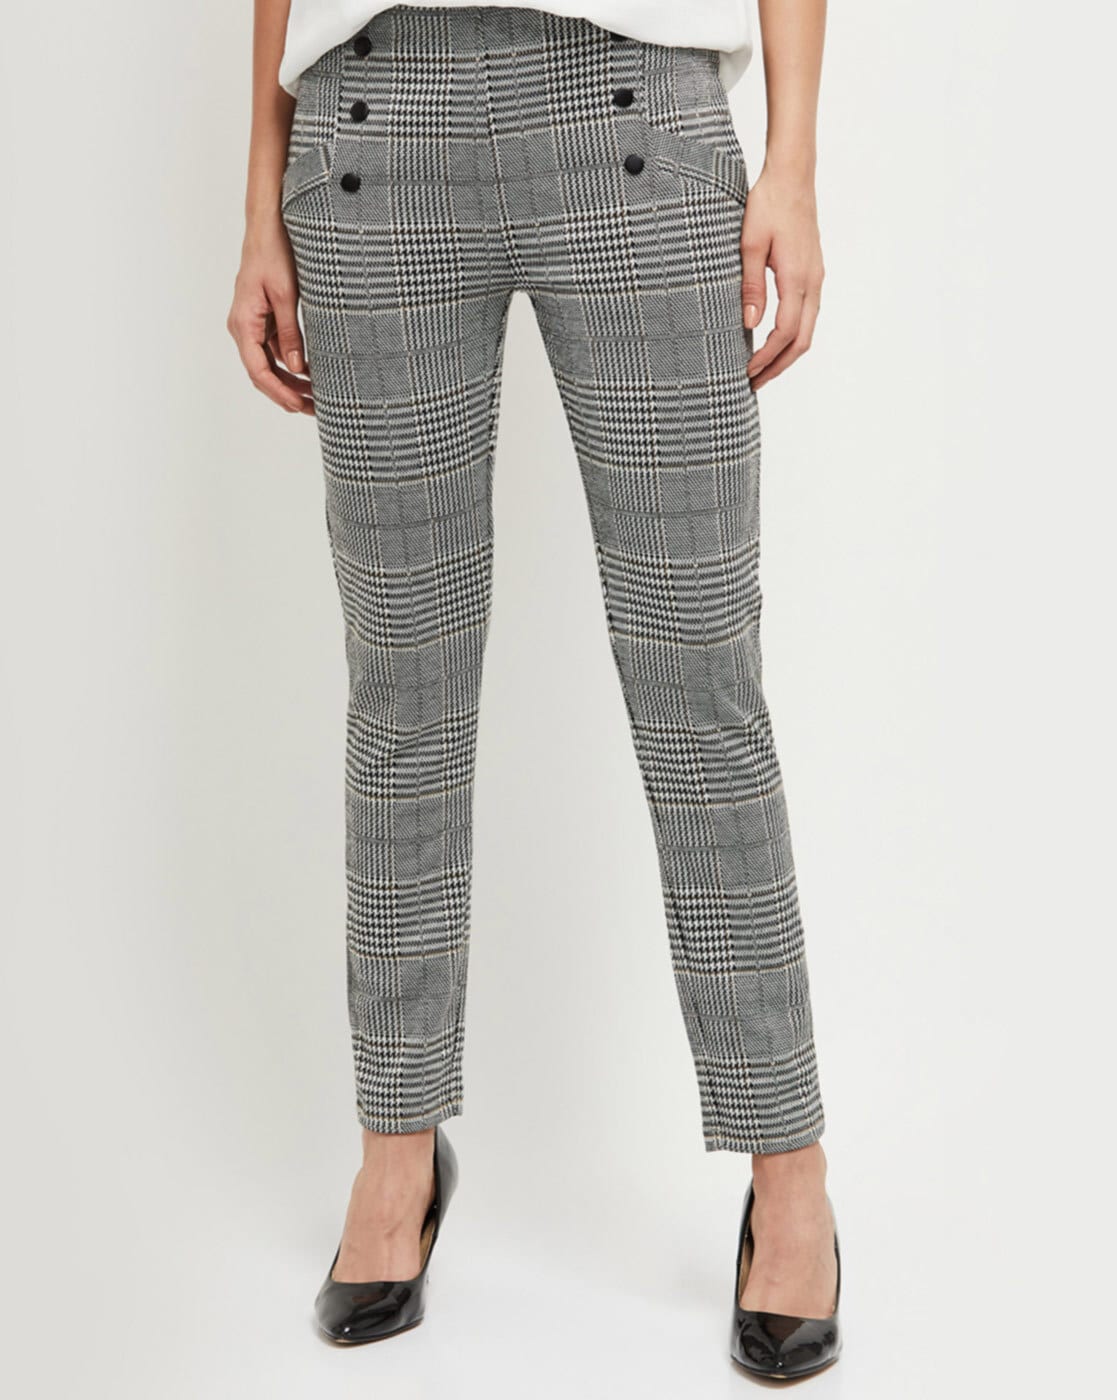 Buy Women Grey Check Formal Regular Fit Trousers Online  721871  Van  Heusen